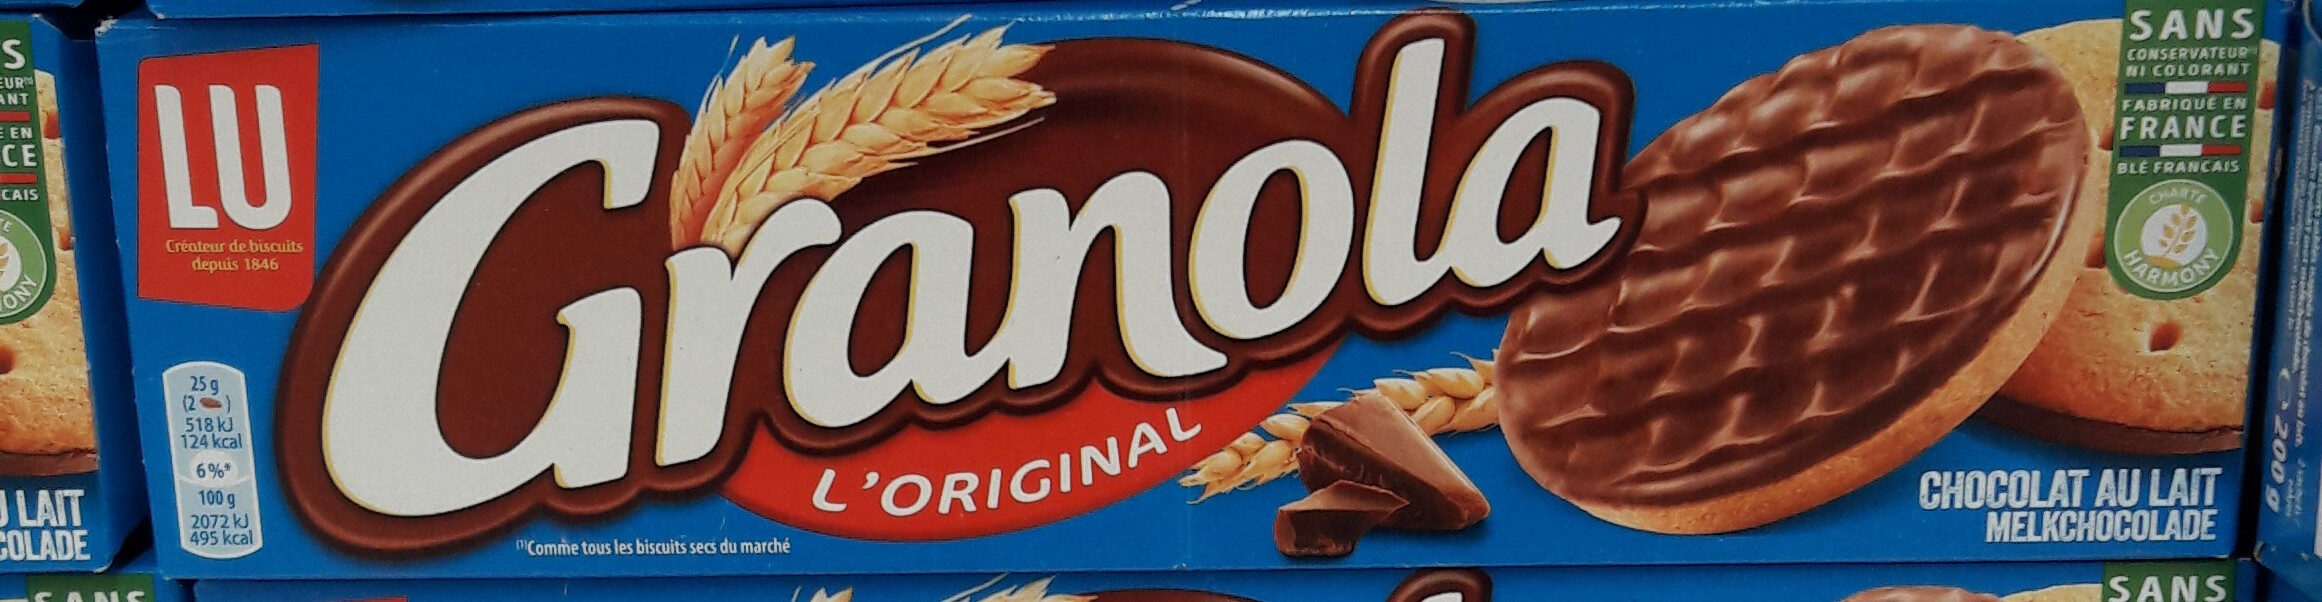 Granola - L'original - chocolat au lait - نتاج - fr